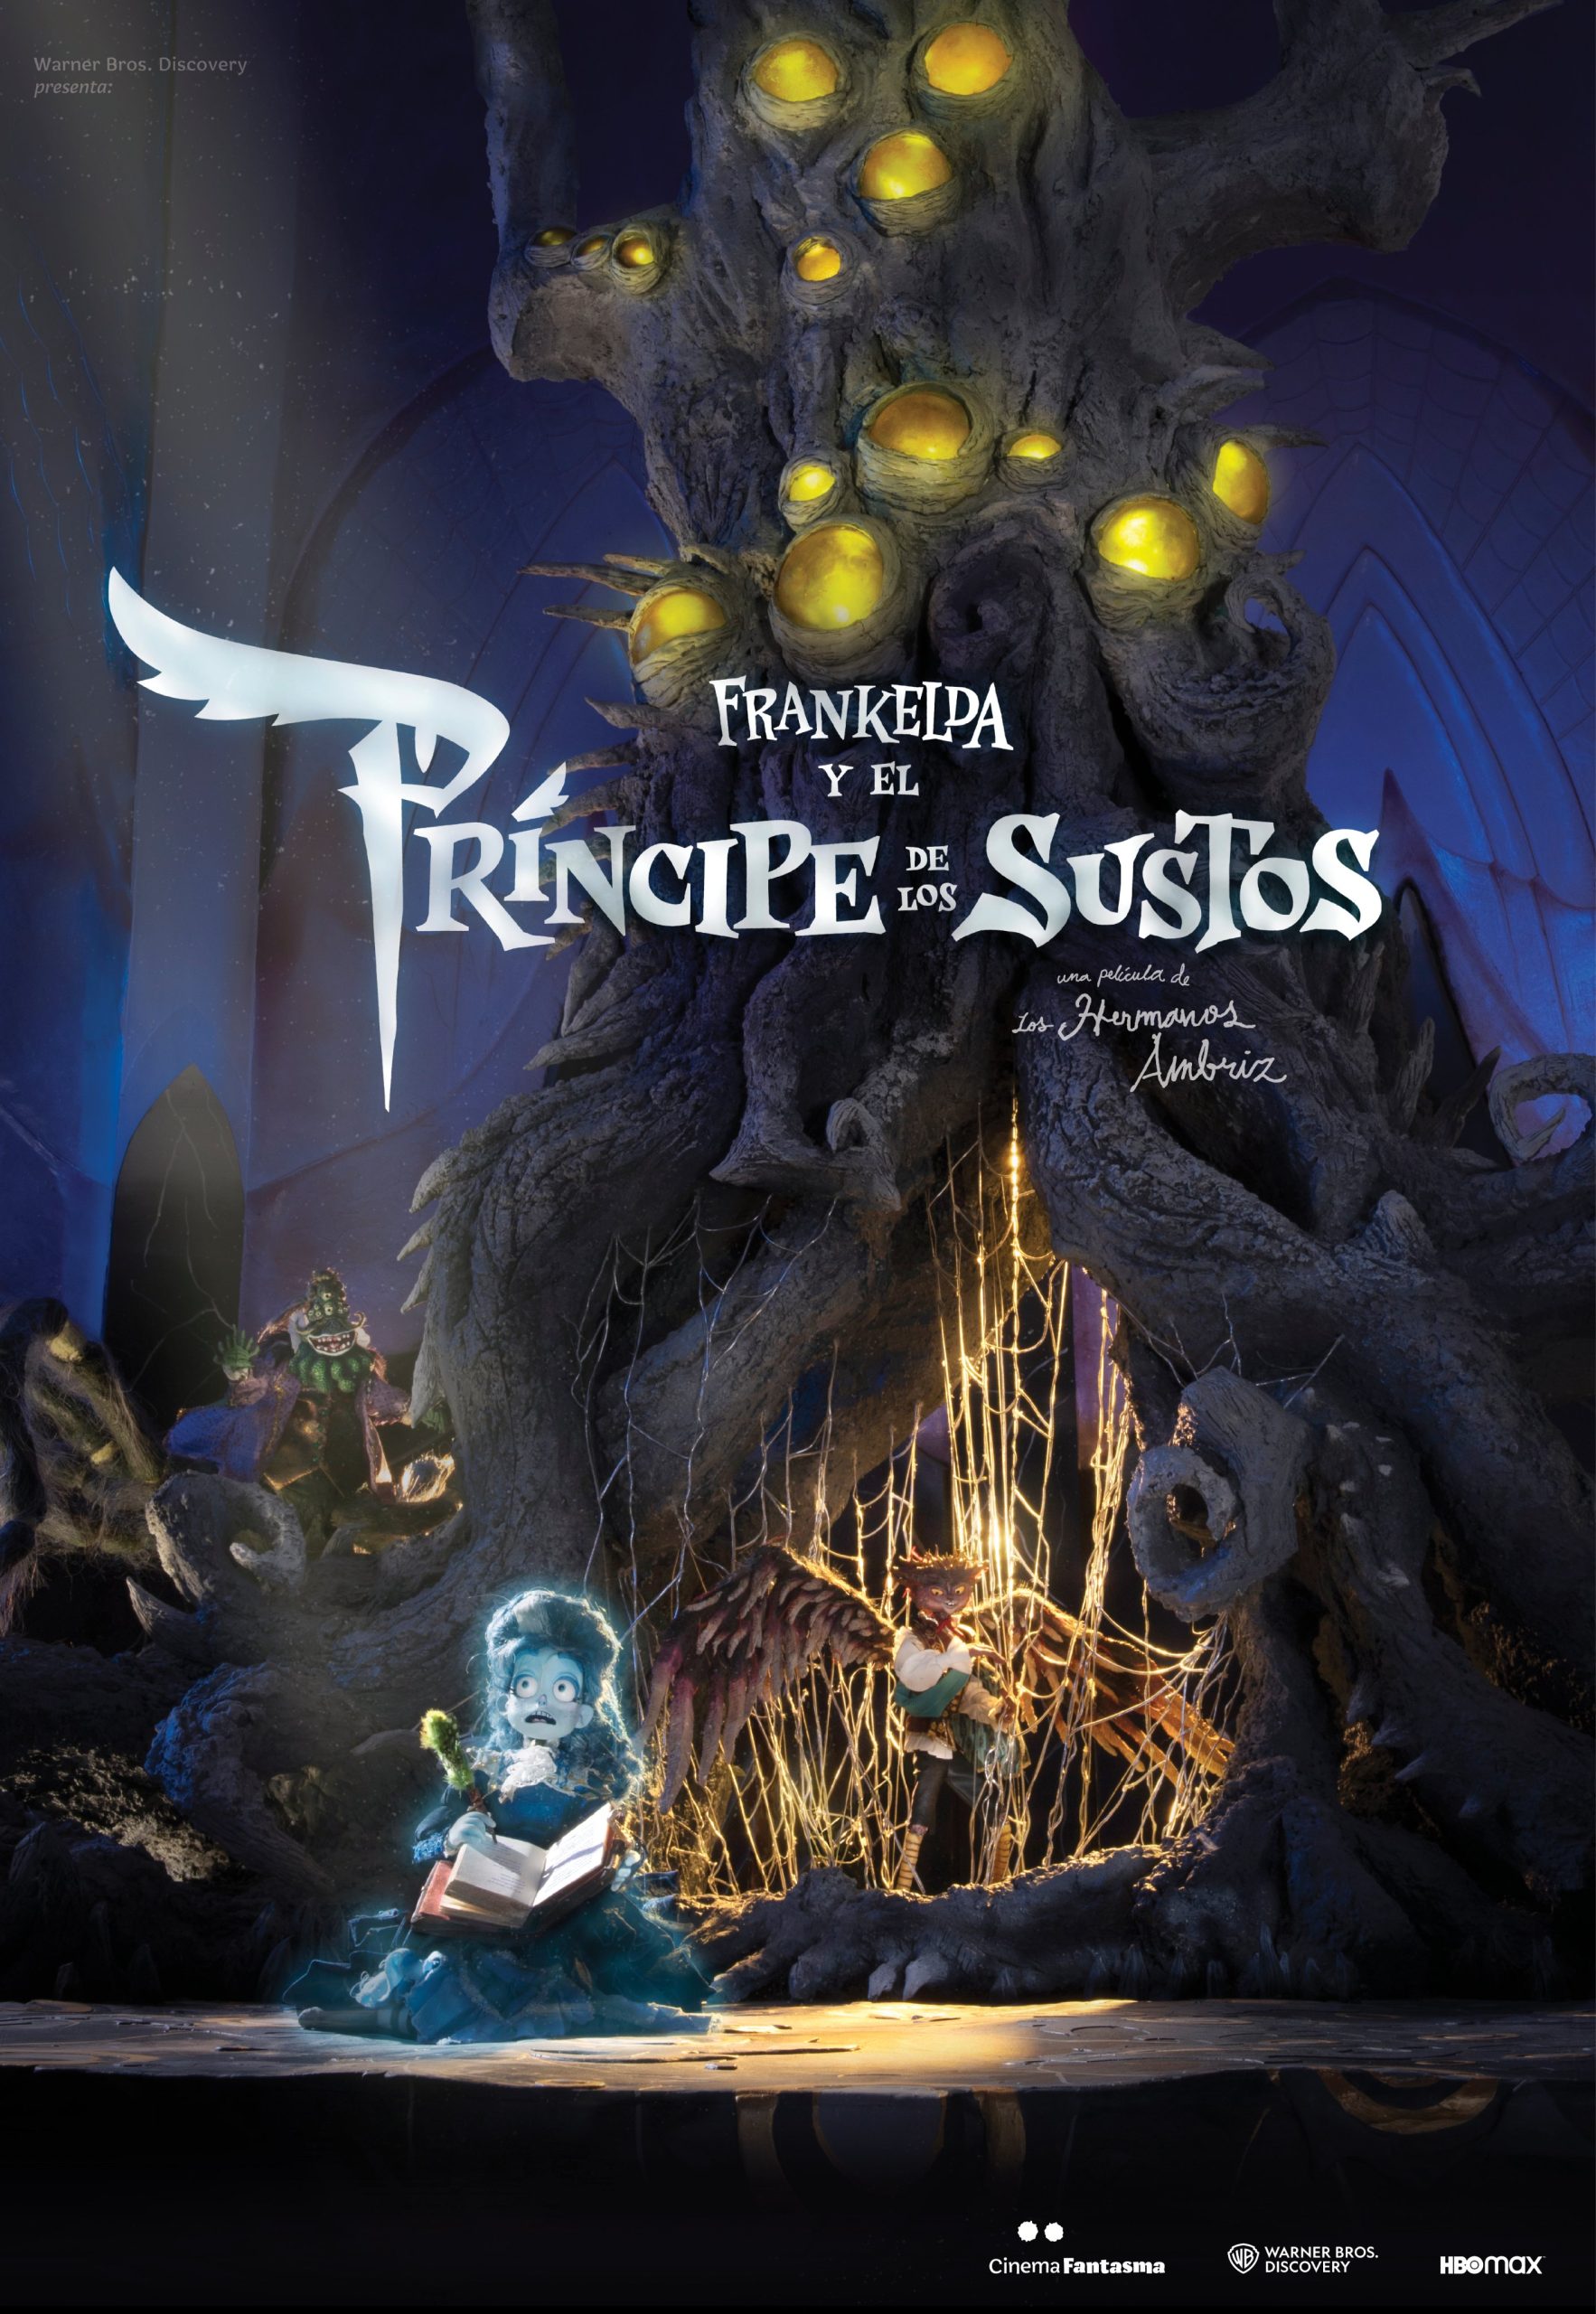 Frankelda y el príncipe de los sustos teaser póster Cinema Fantasma